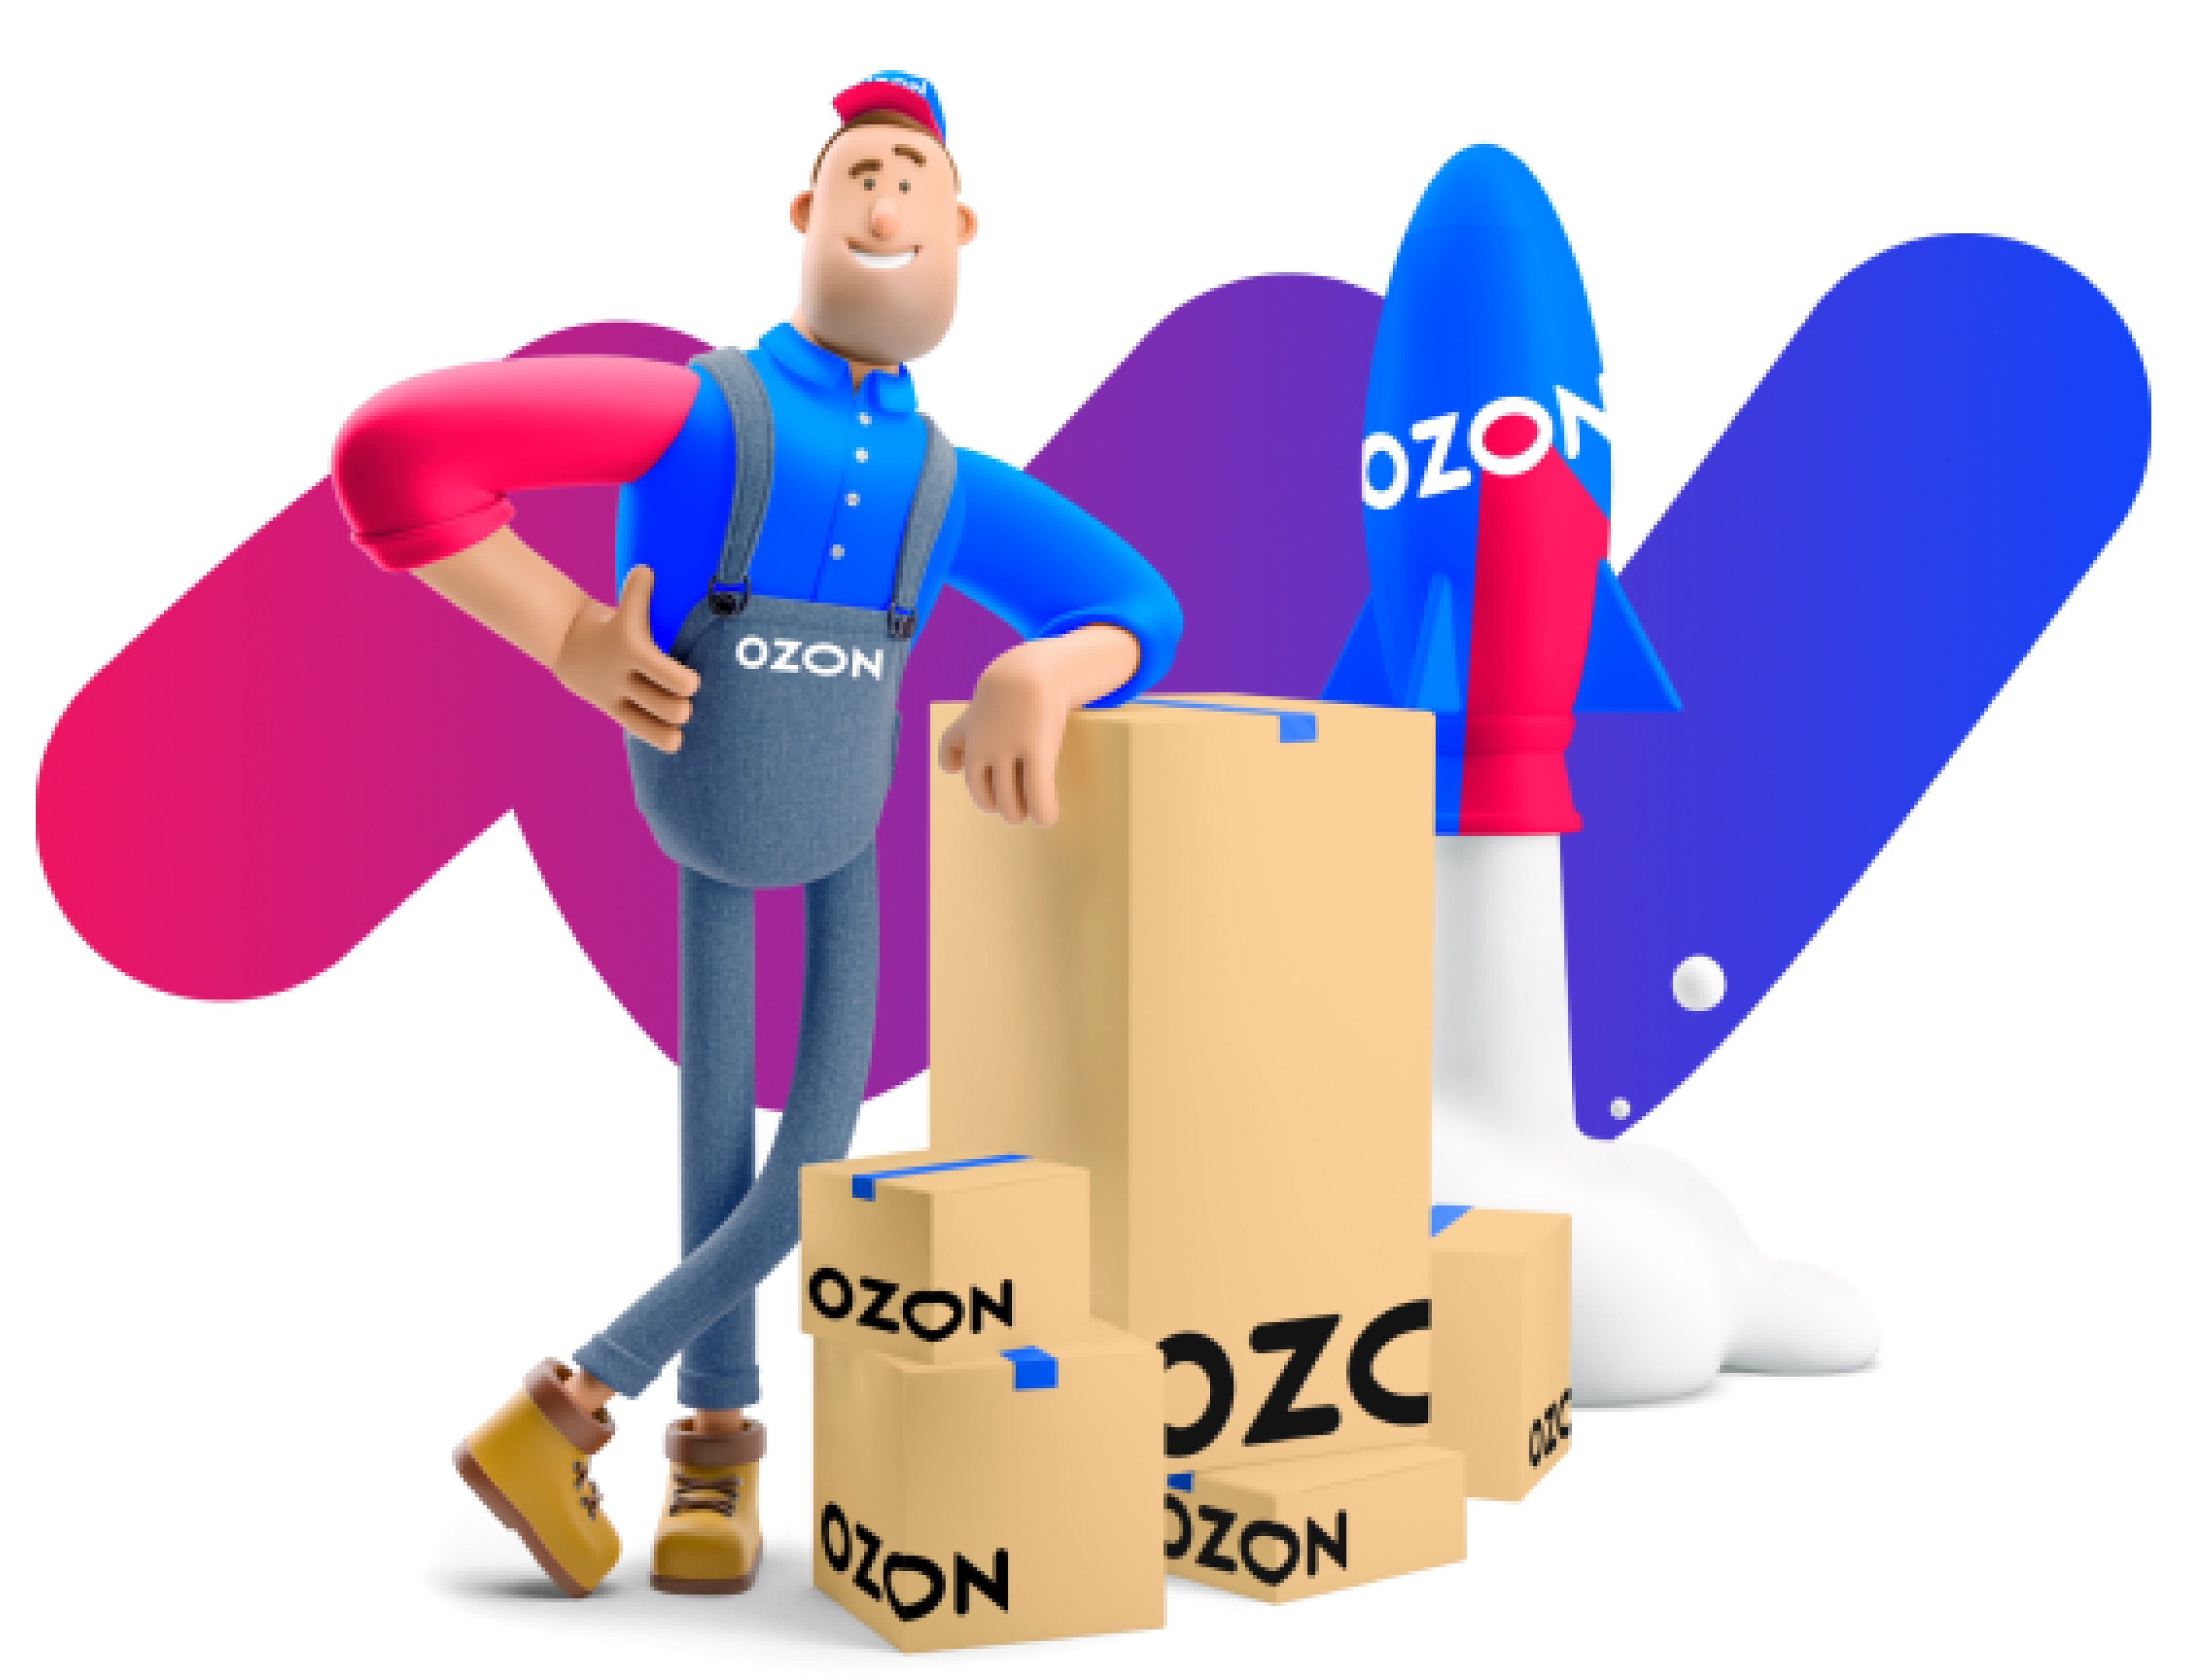 Нюансы озон. Маркетплейсы Озон. Продвижение на Озон. Озон иллюстрации. Логотип OZON маркетплейс.